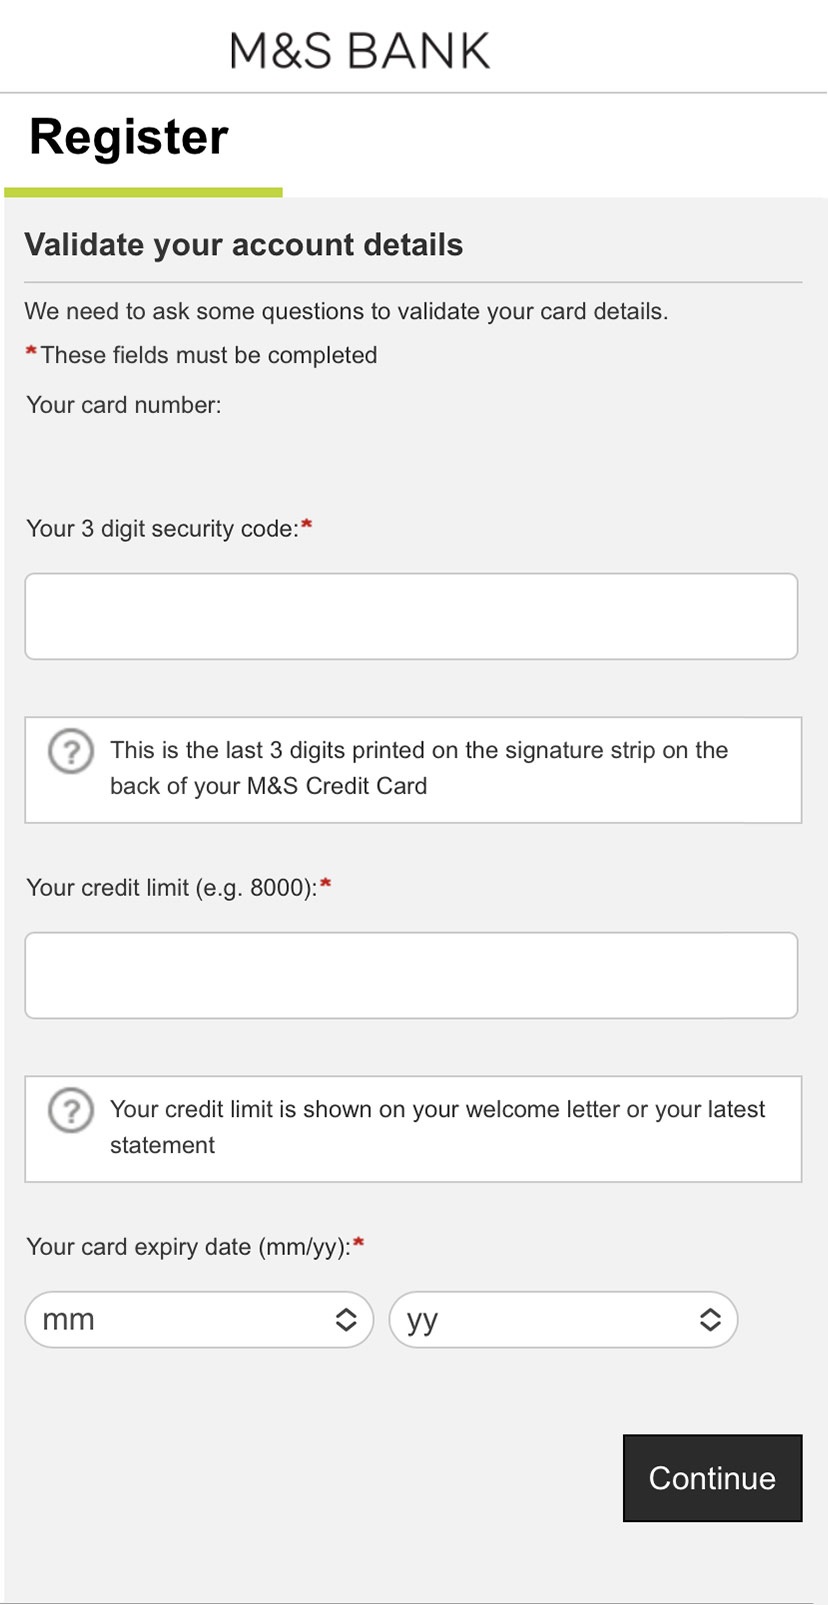 Internet Banking registration validate details screen.